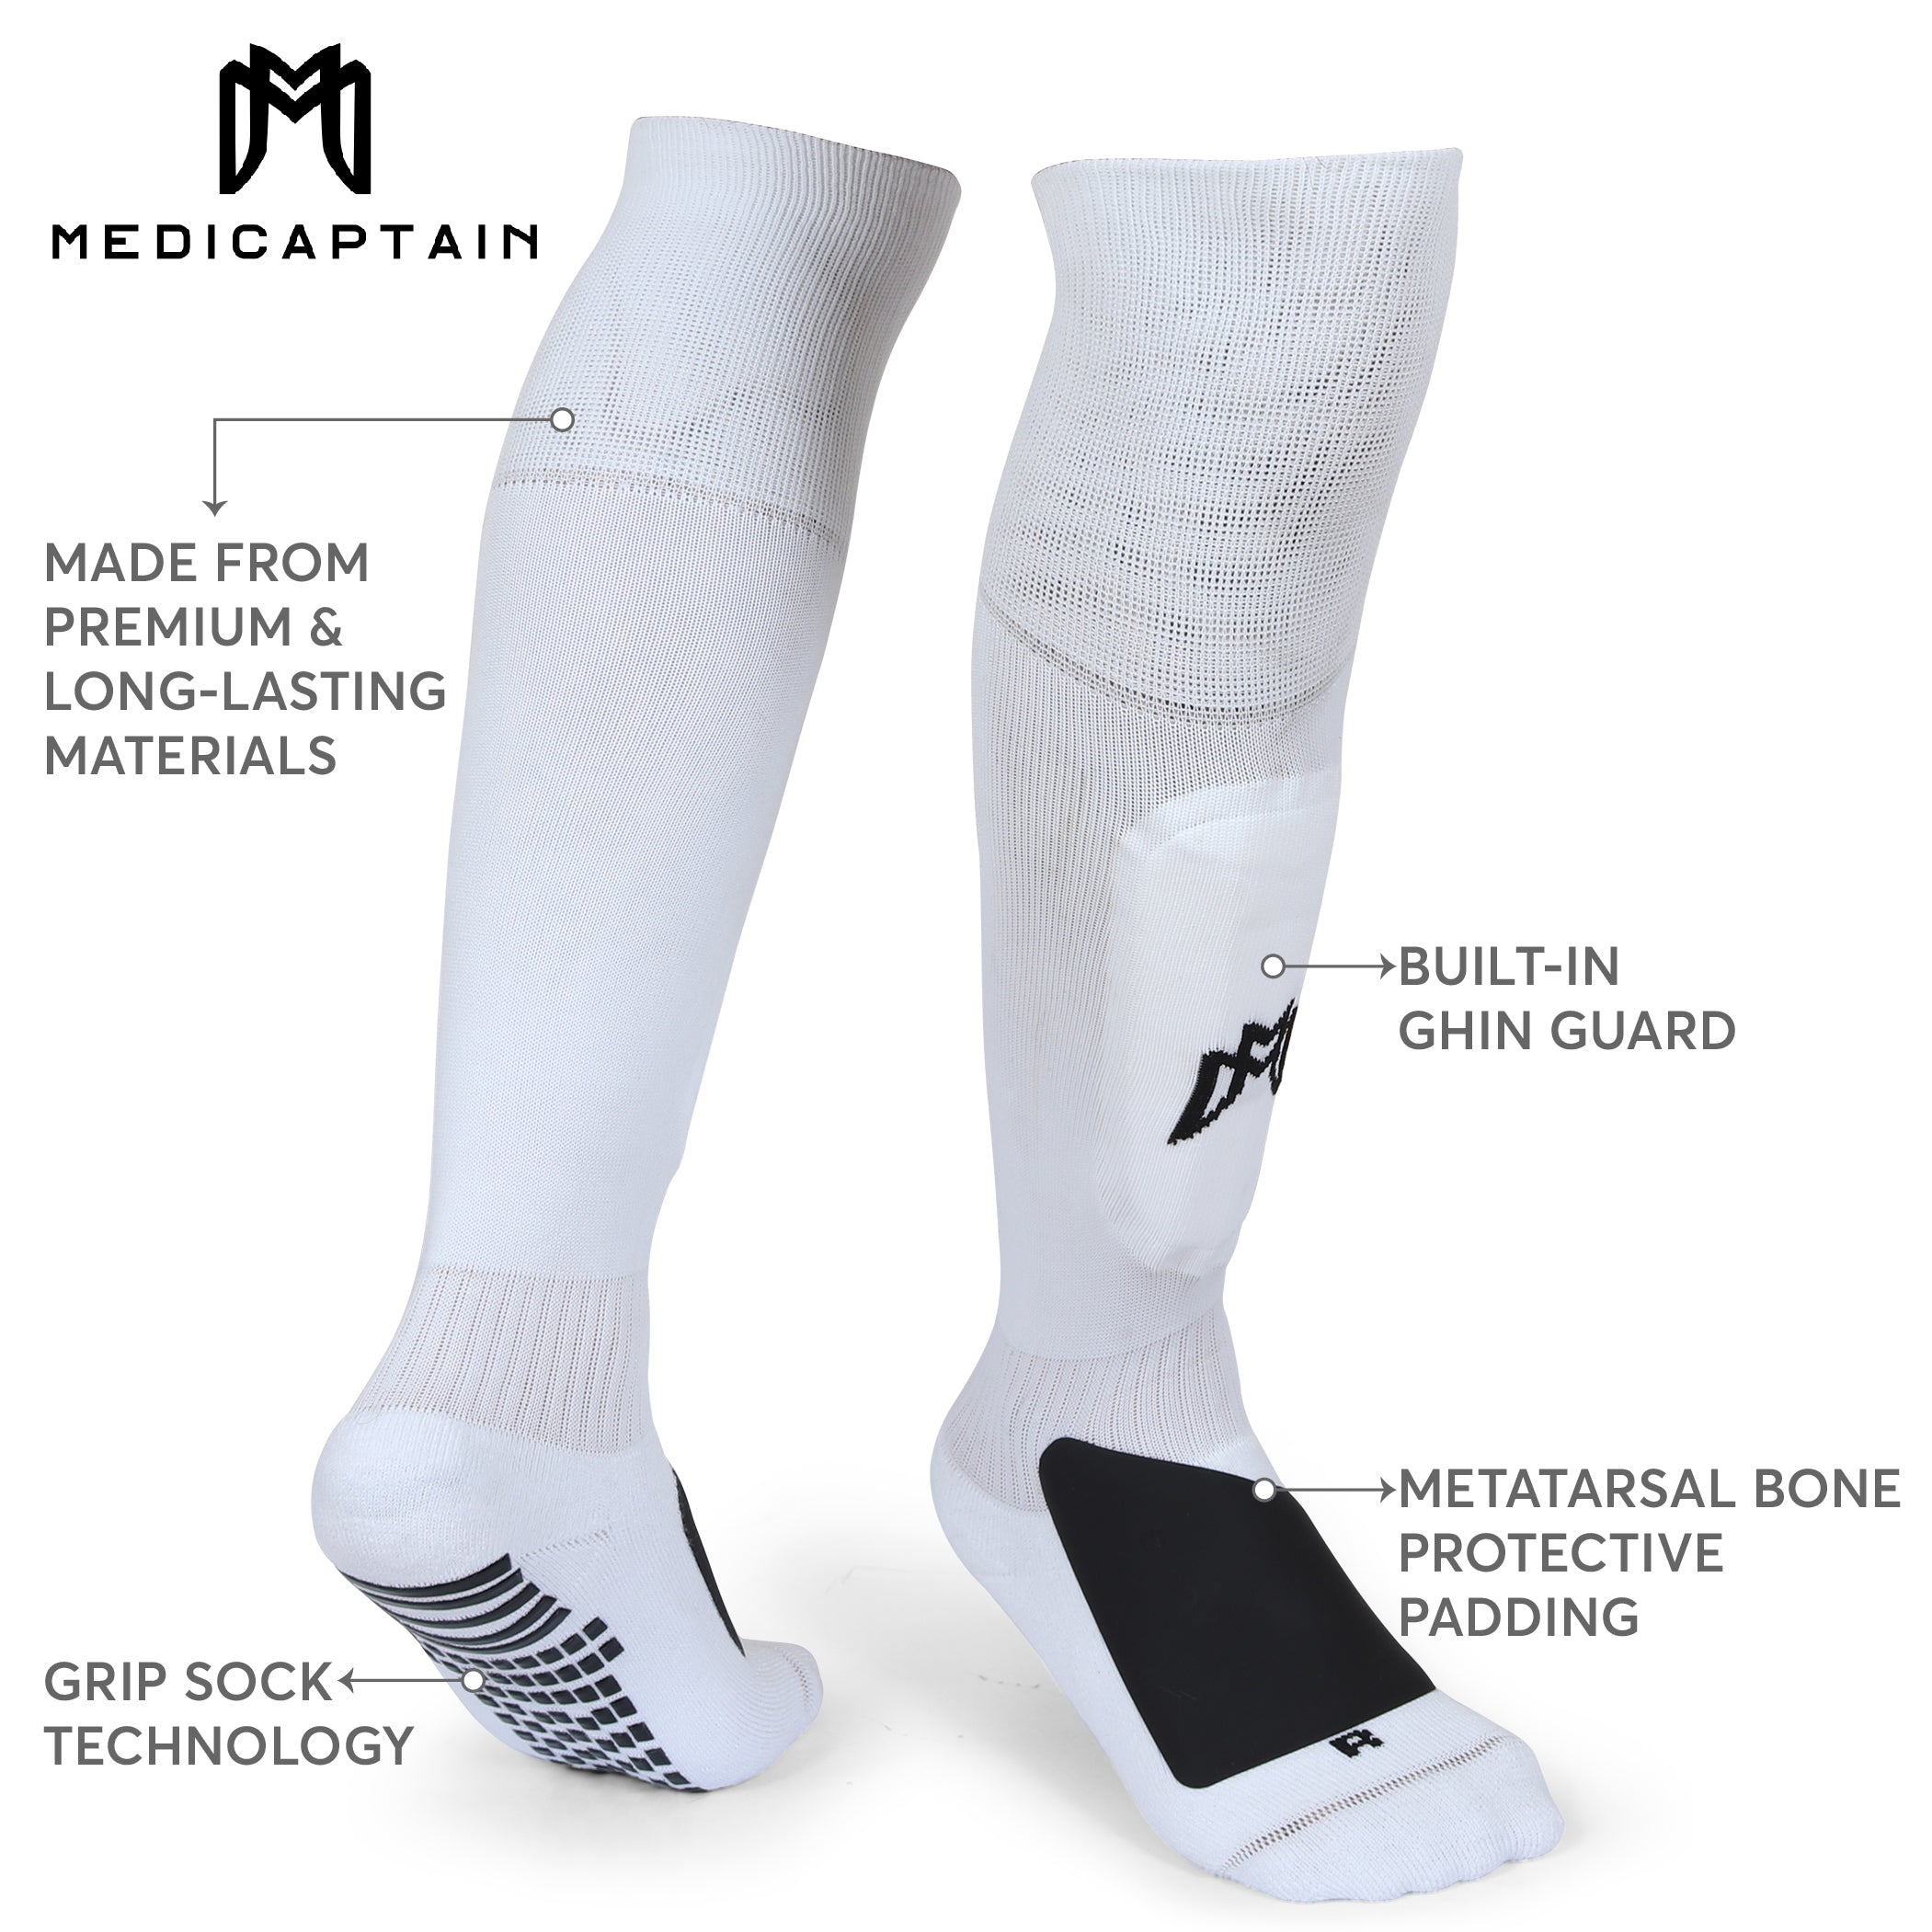 Anti-slip Soccer Socks (Medias antideslizantes) – GK Store